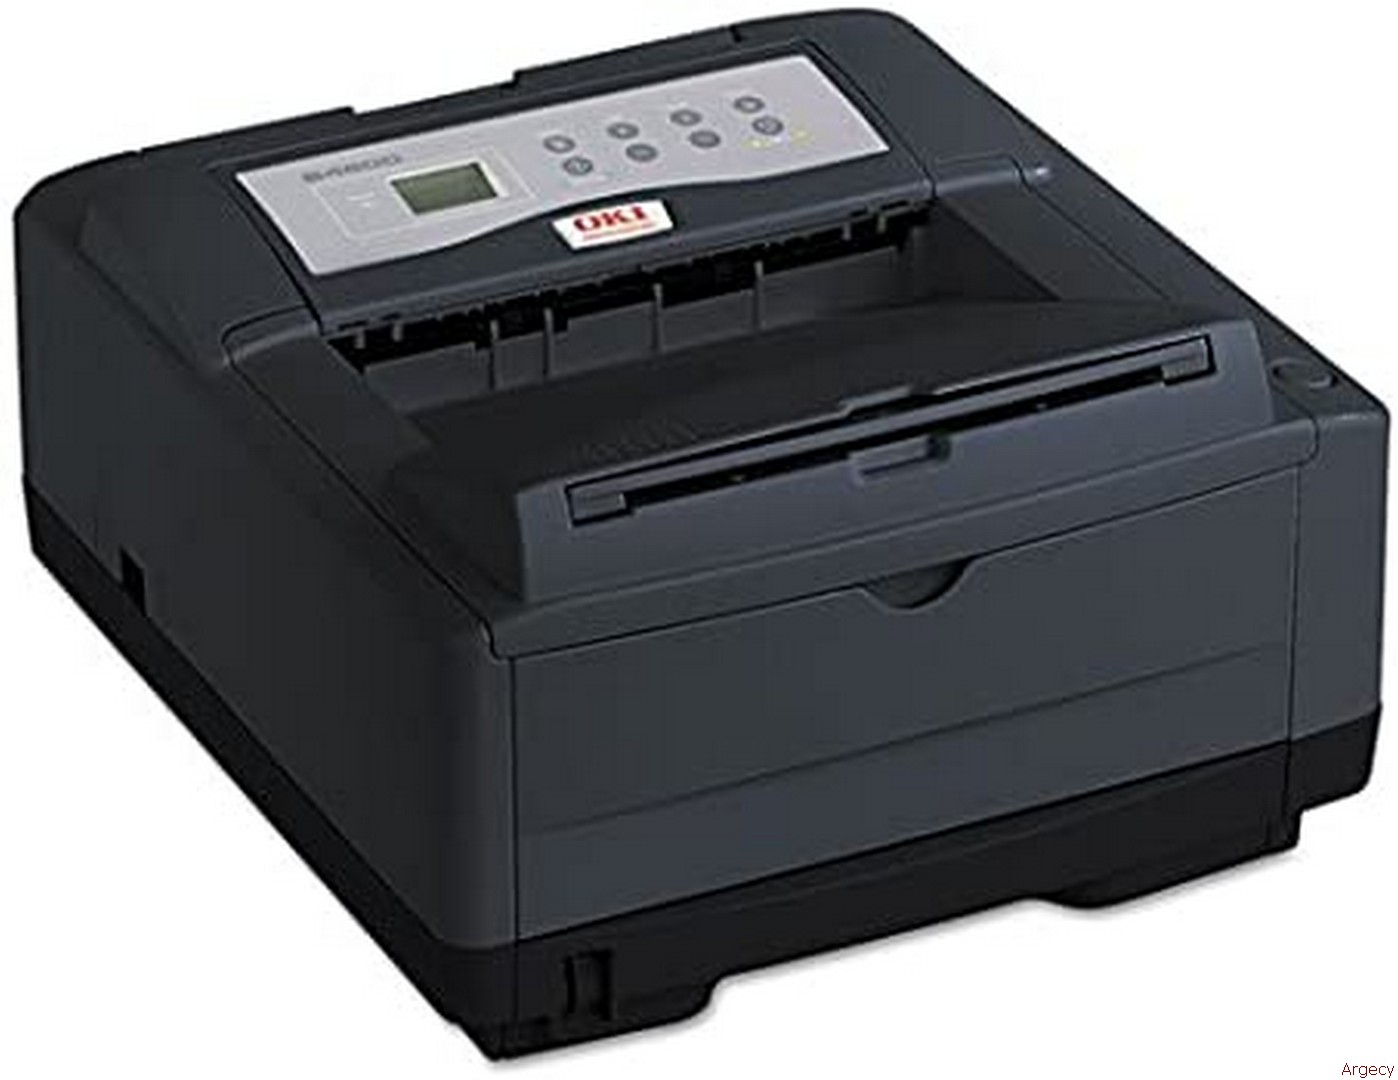 Oki 4600 Printer